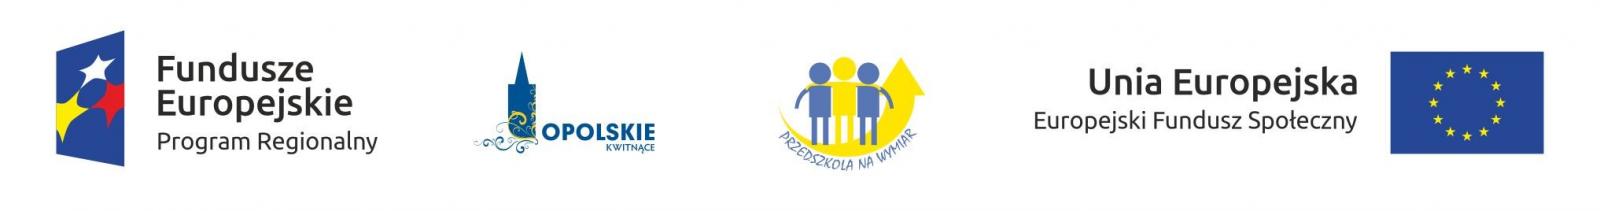 Europejski Fundusz Społeczny - przedszkola